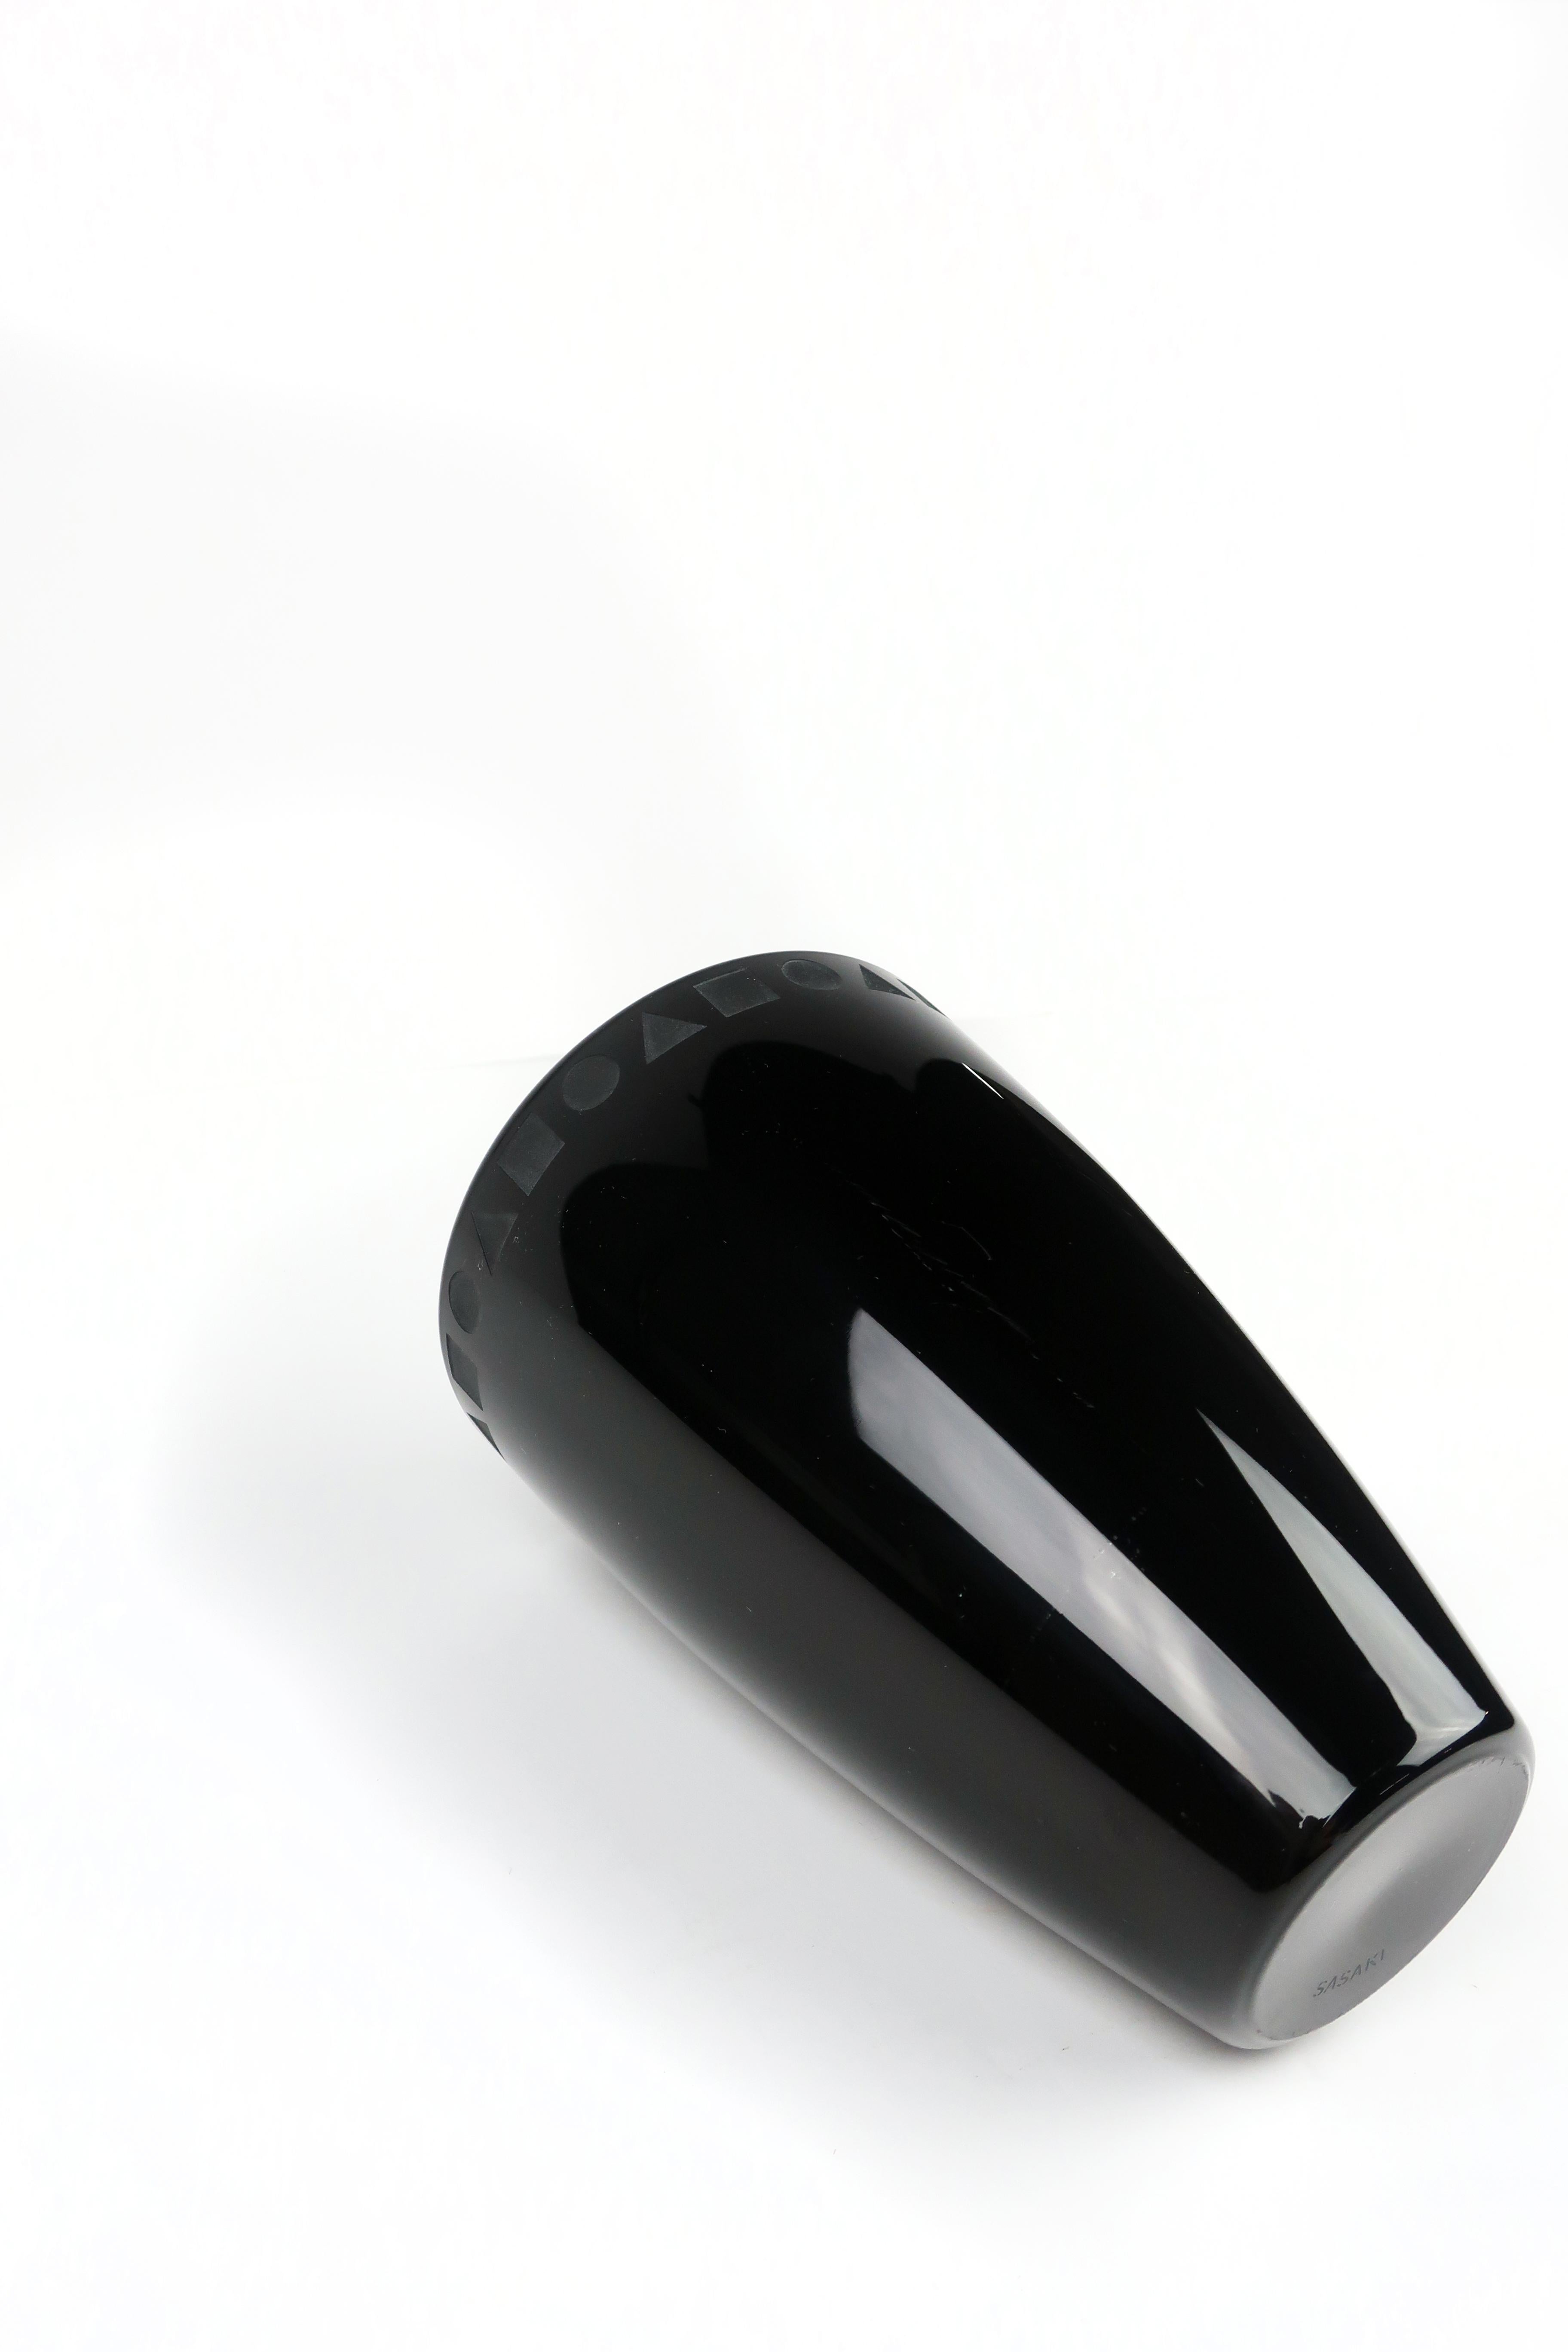 Post-Modern Black Crystal Vase by Ward Bennett for Sasaki 2